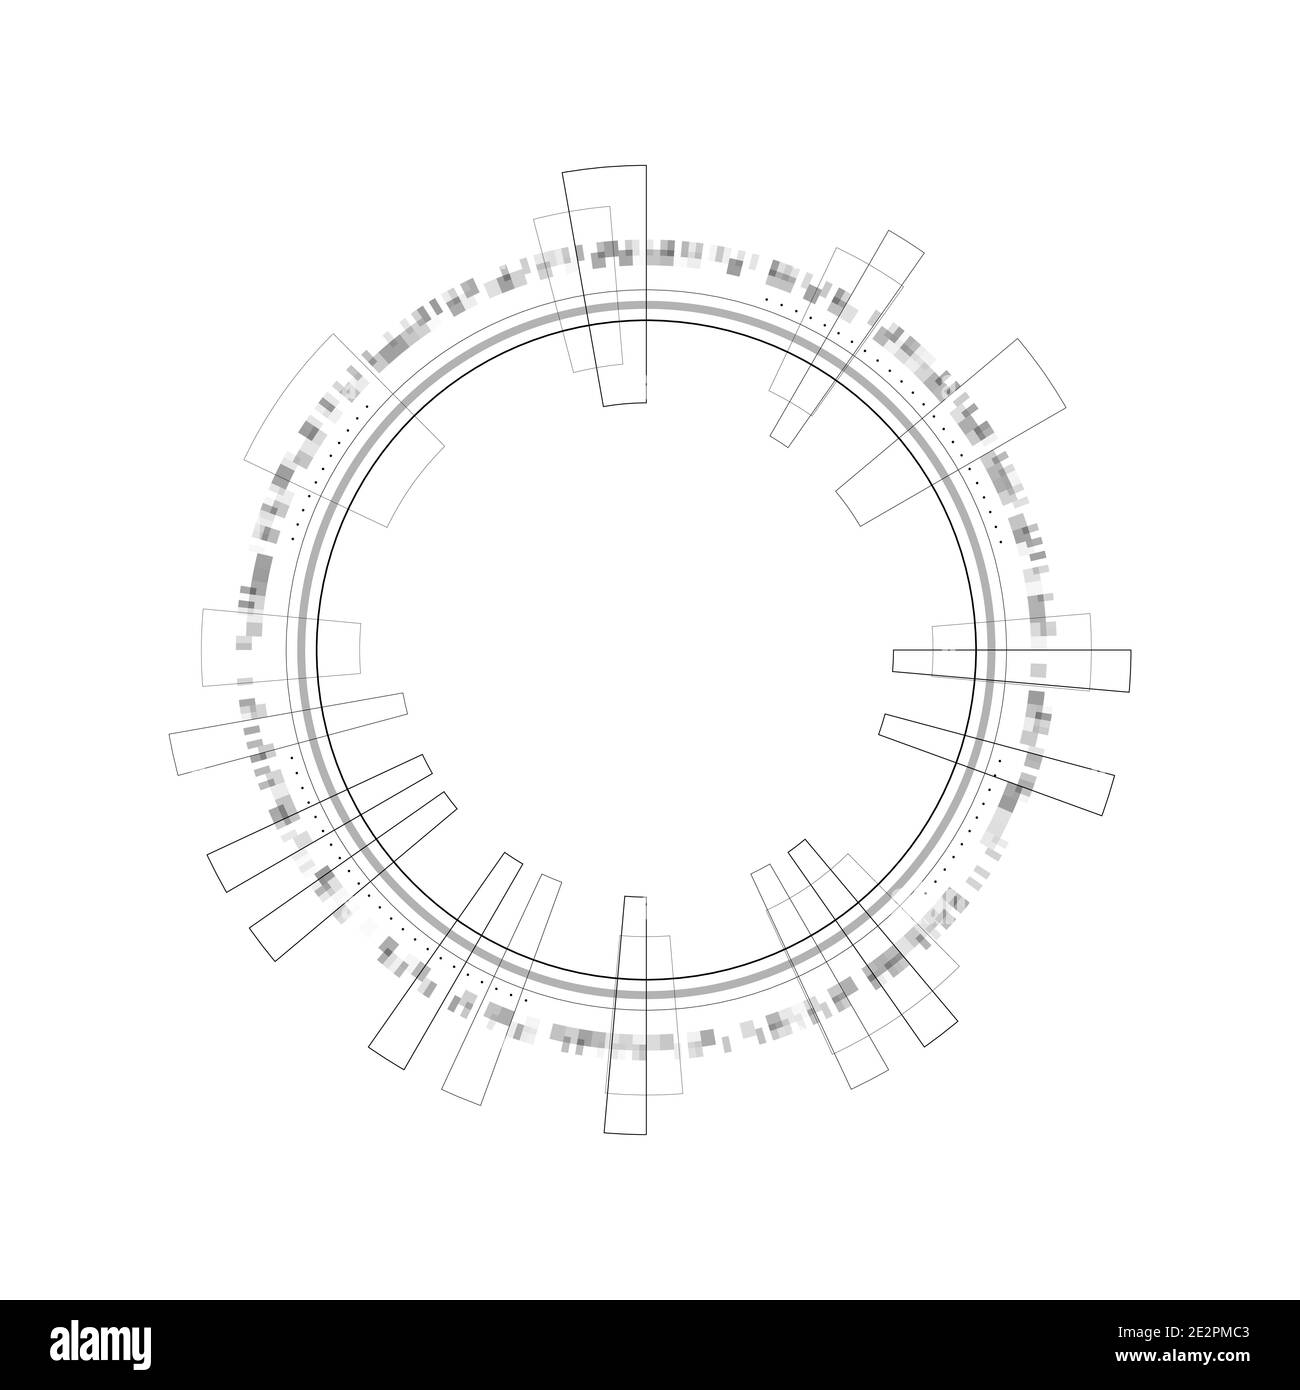 Elementi infografici del cerchio HUD. Display head-up rotondo sci-fi per un'interfaccia utente futuristica HUD. Tema tecnico e scientifico. Illustrazione vettoriale. Illustrazione Vettoriale